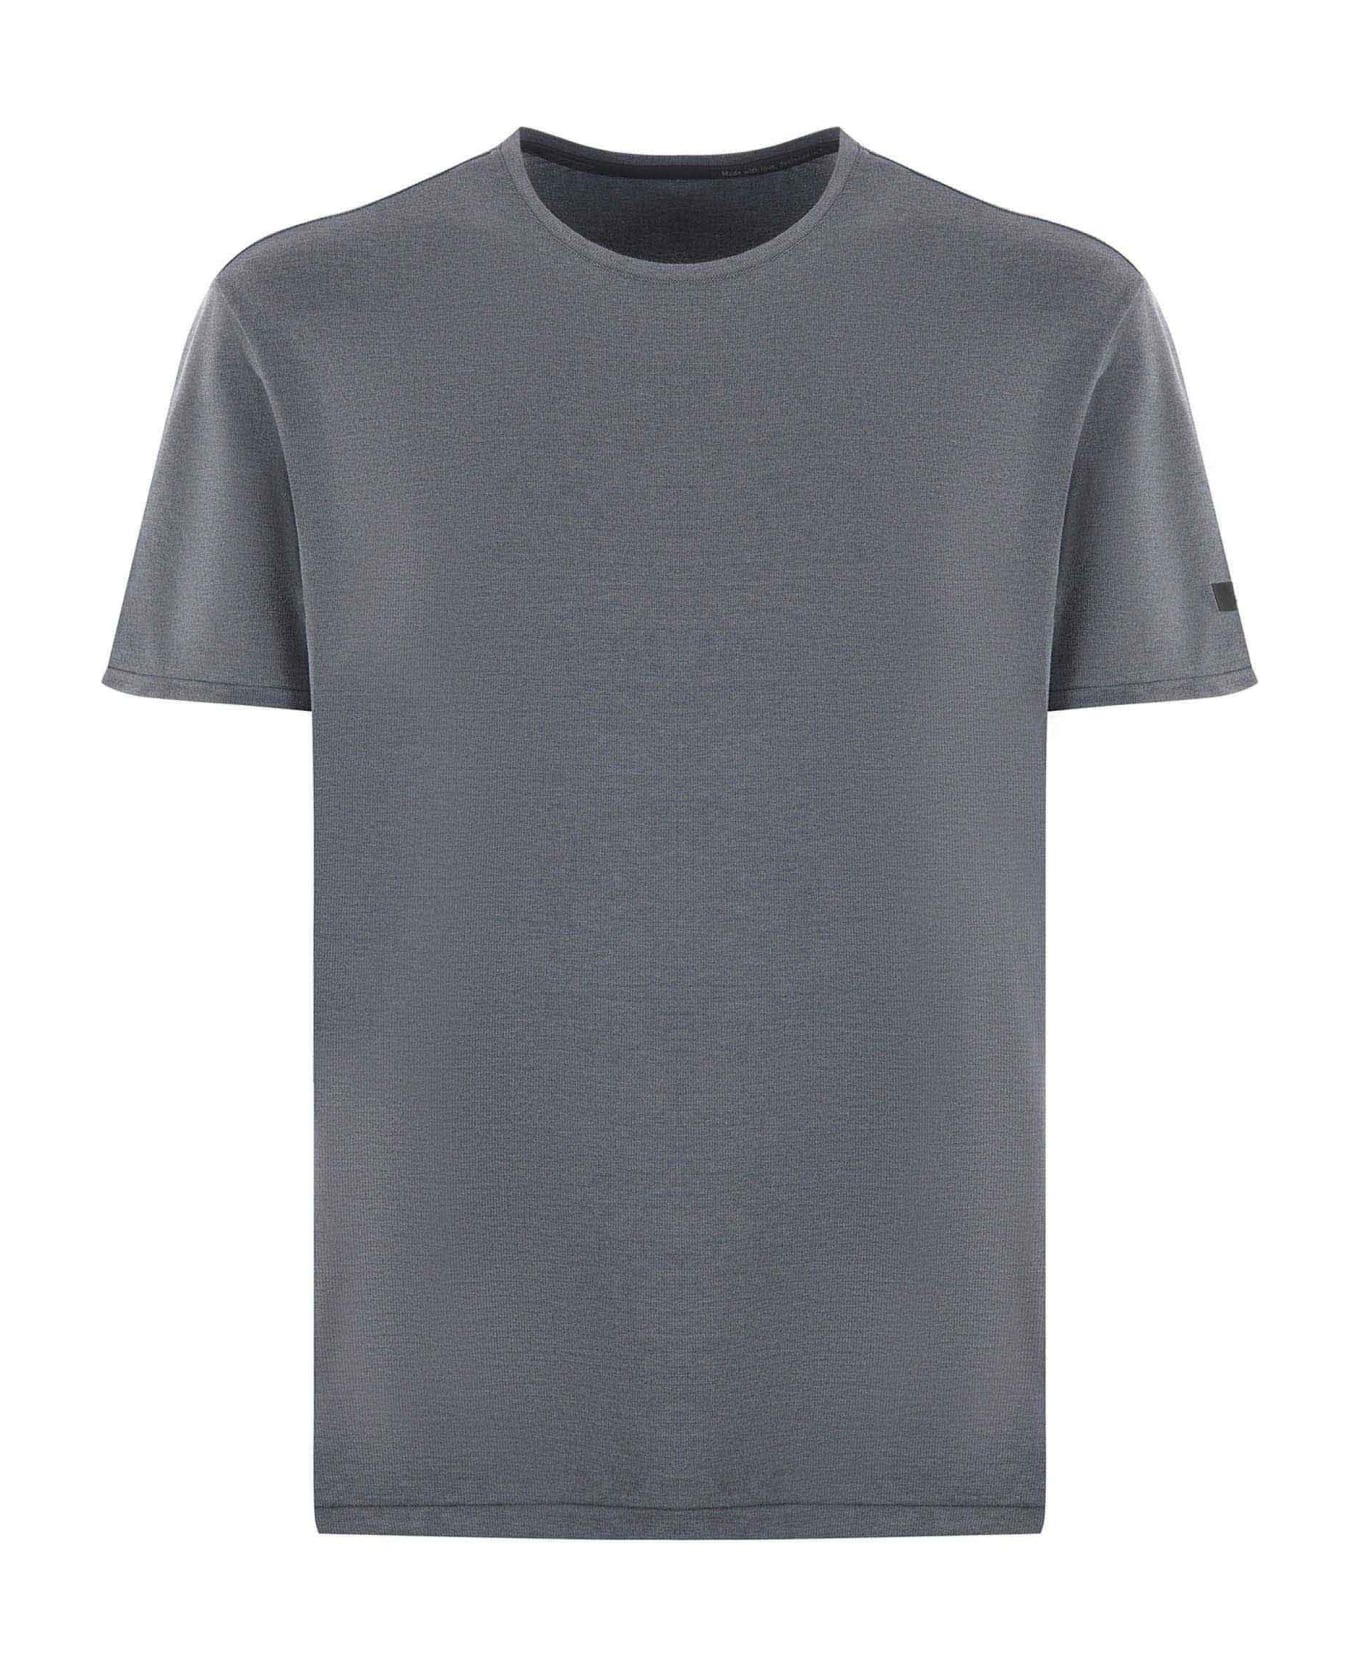 RRD - Roberto Ricci Design Rrd T-shirt - Grigio